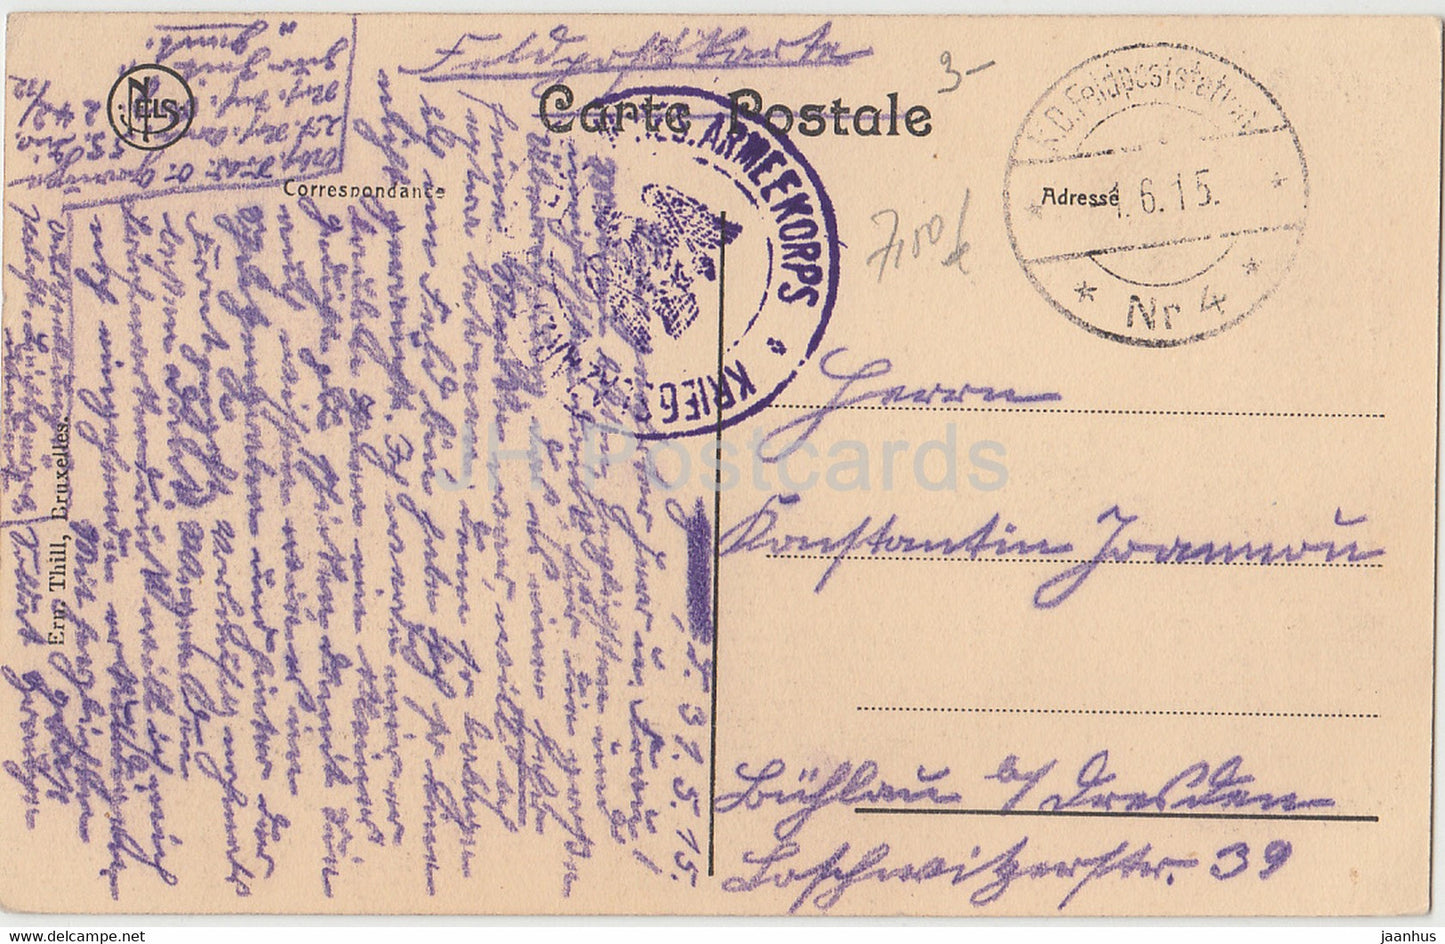 Gand - Gent - Beffroi Eglise St Nicolas et Panorama - Feldpost - alte Postkarte - 1915 - Belgien - gebraucht